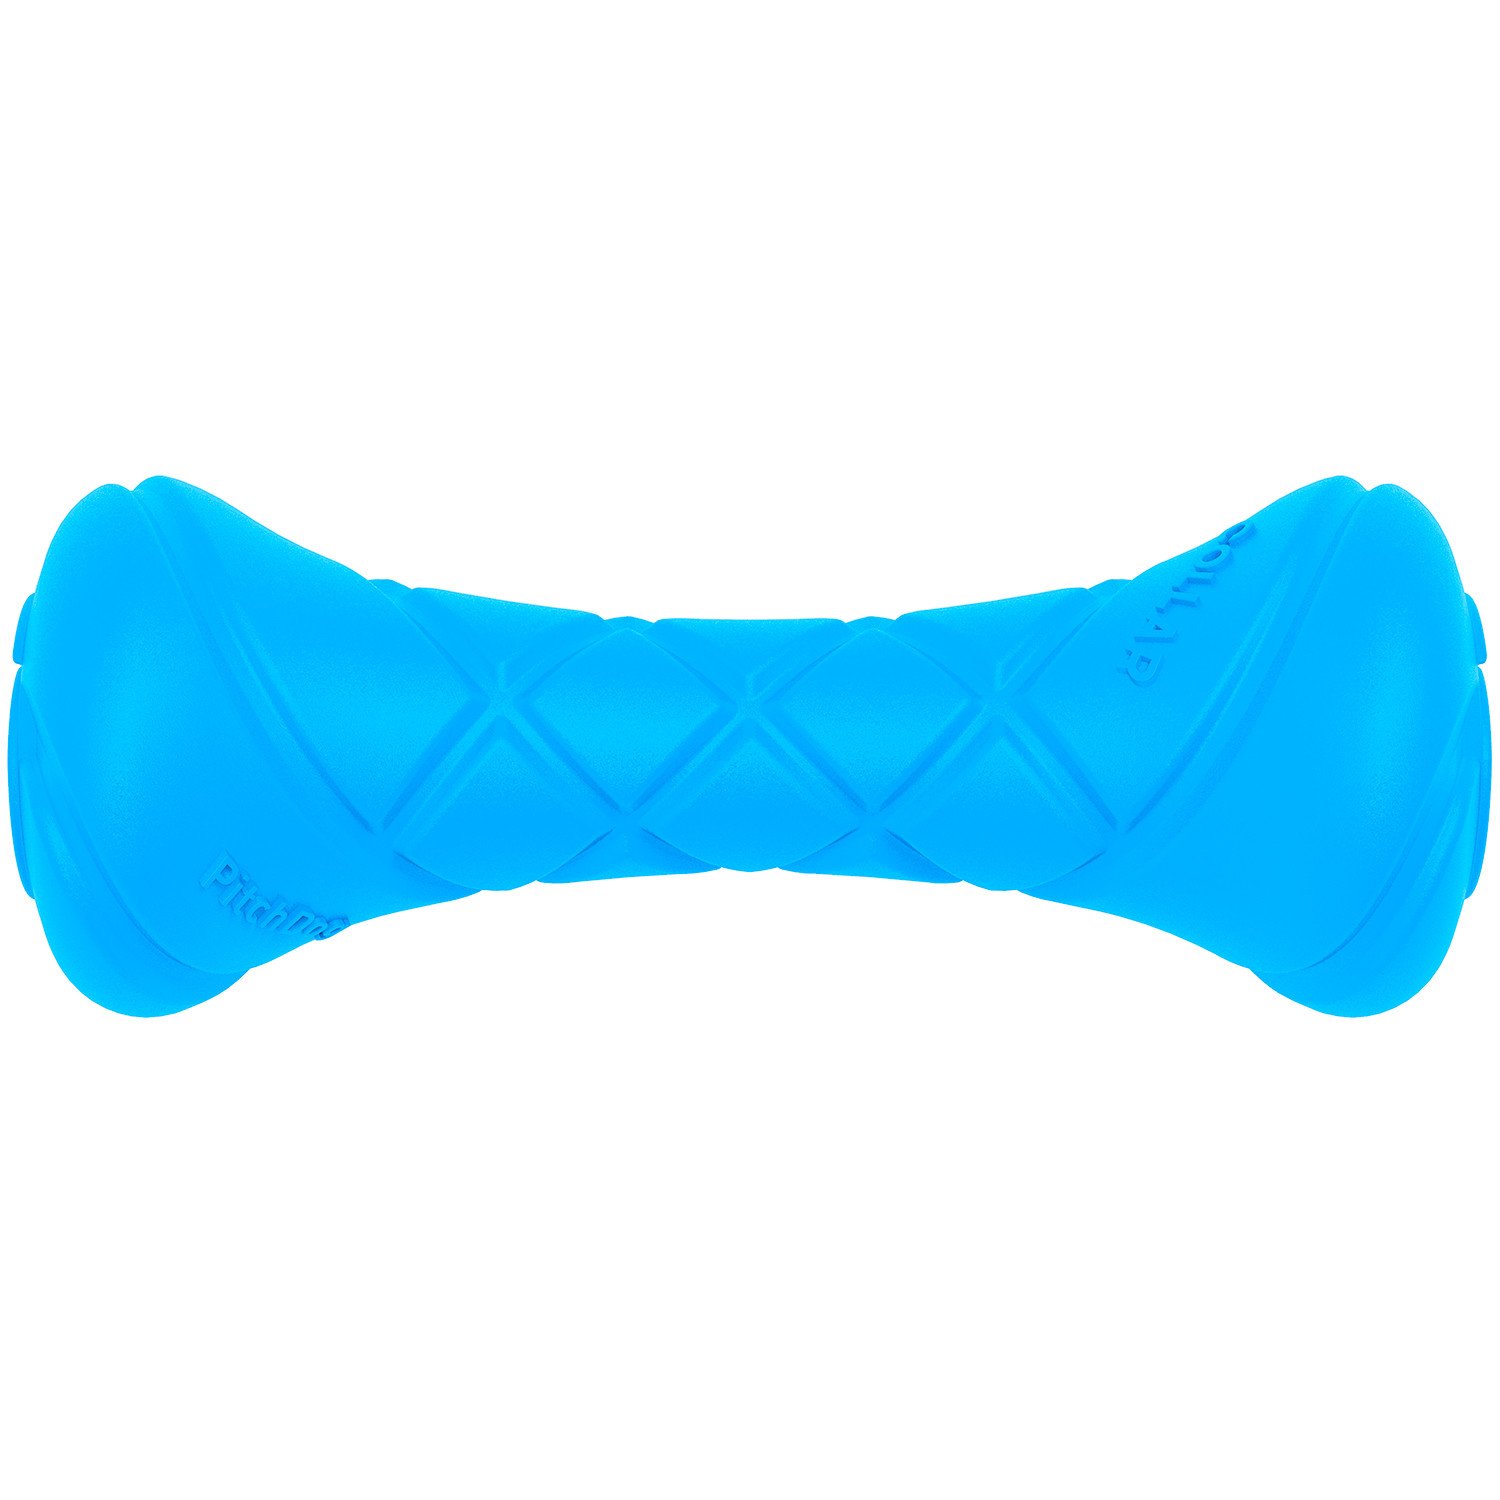 PitchDog hrací činka, 19x7 cm, modrá